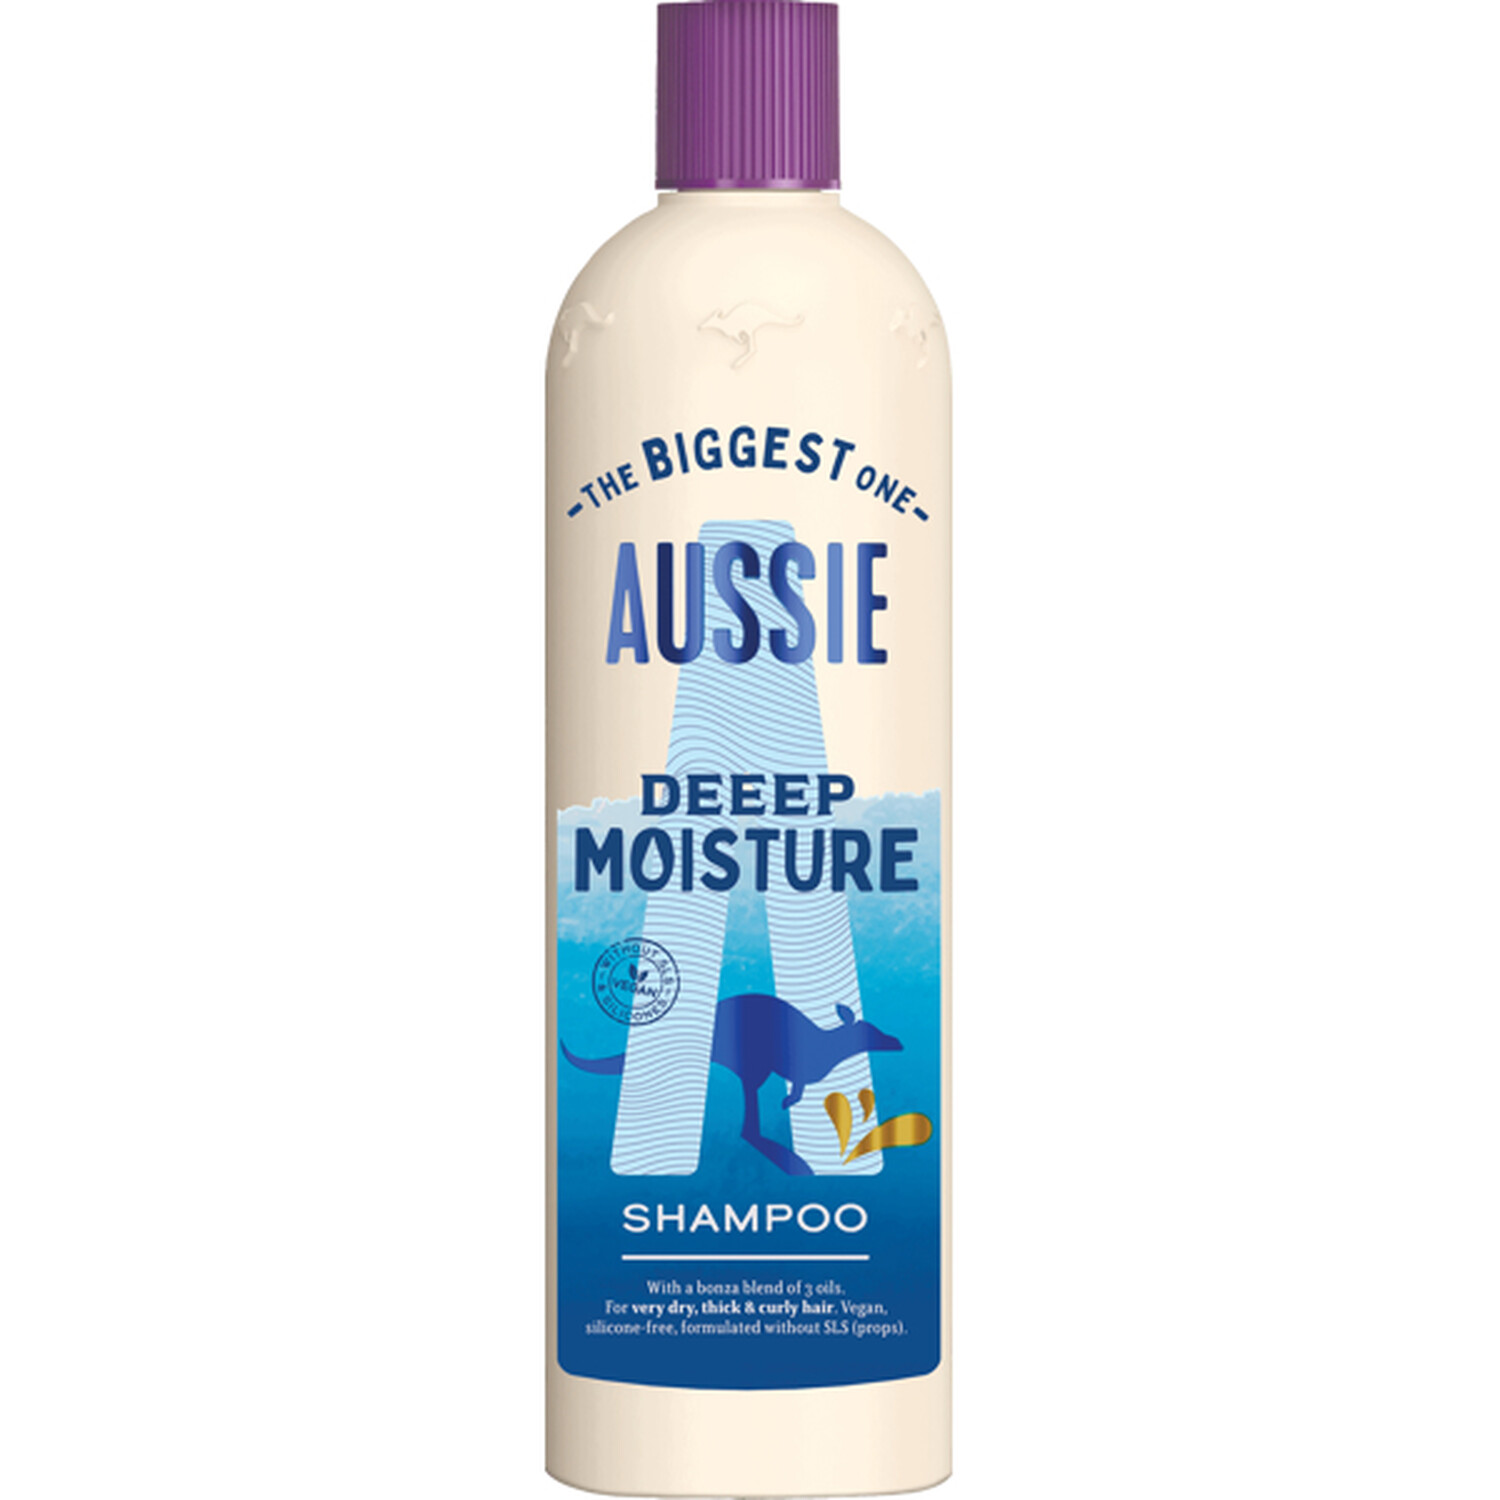 Aussie Deeep Moisture Shampoo 675ml - Off White Image